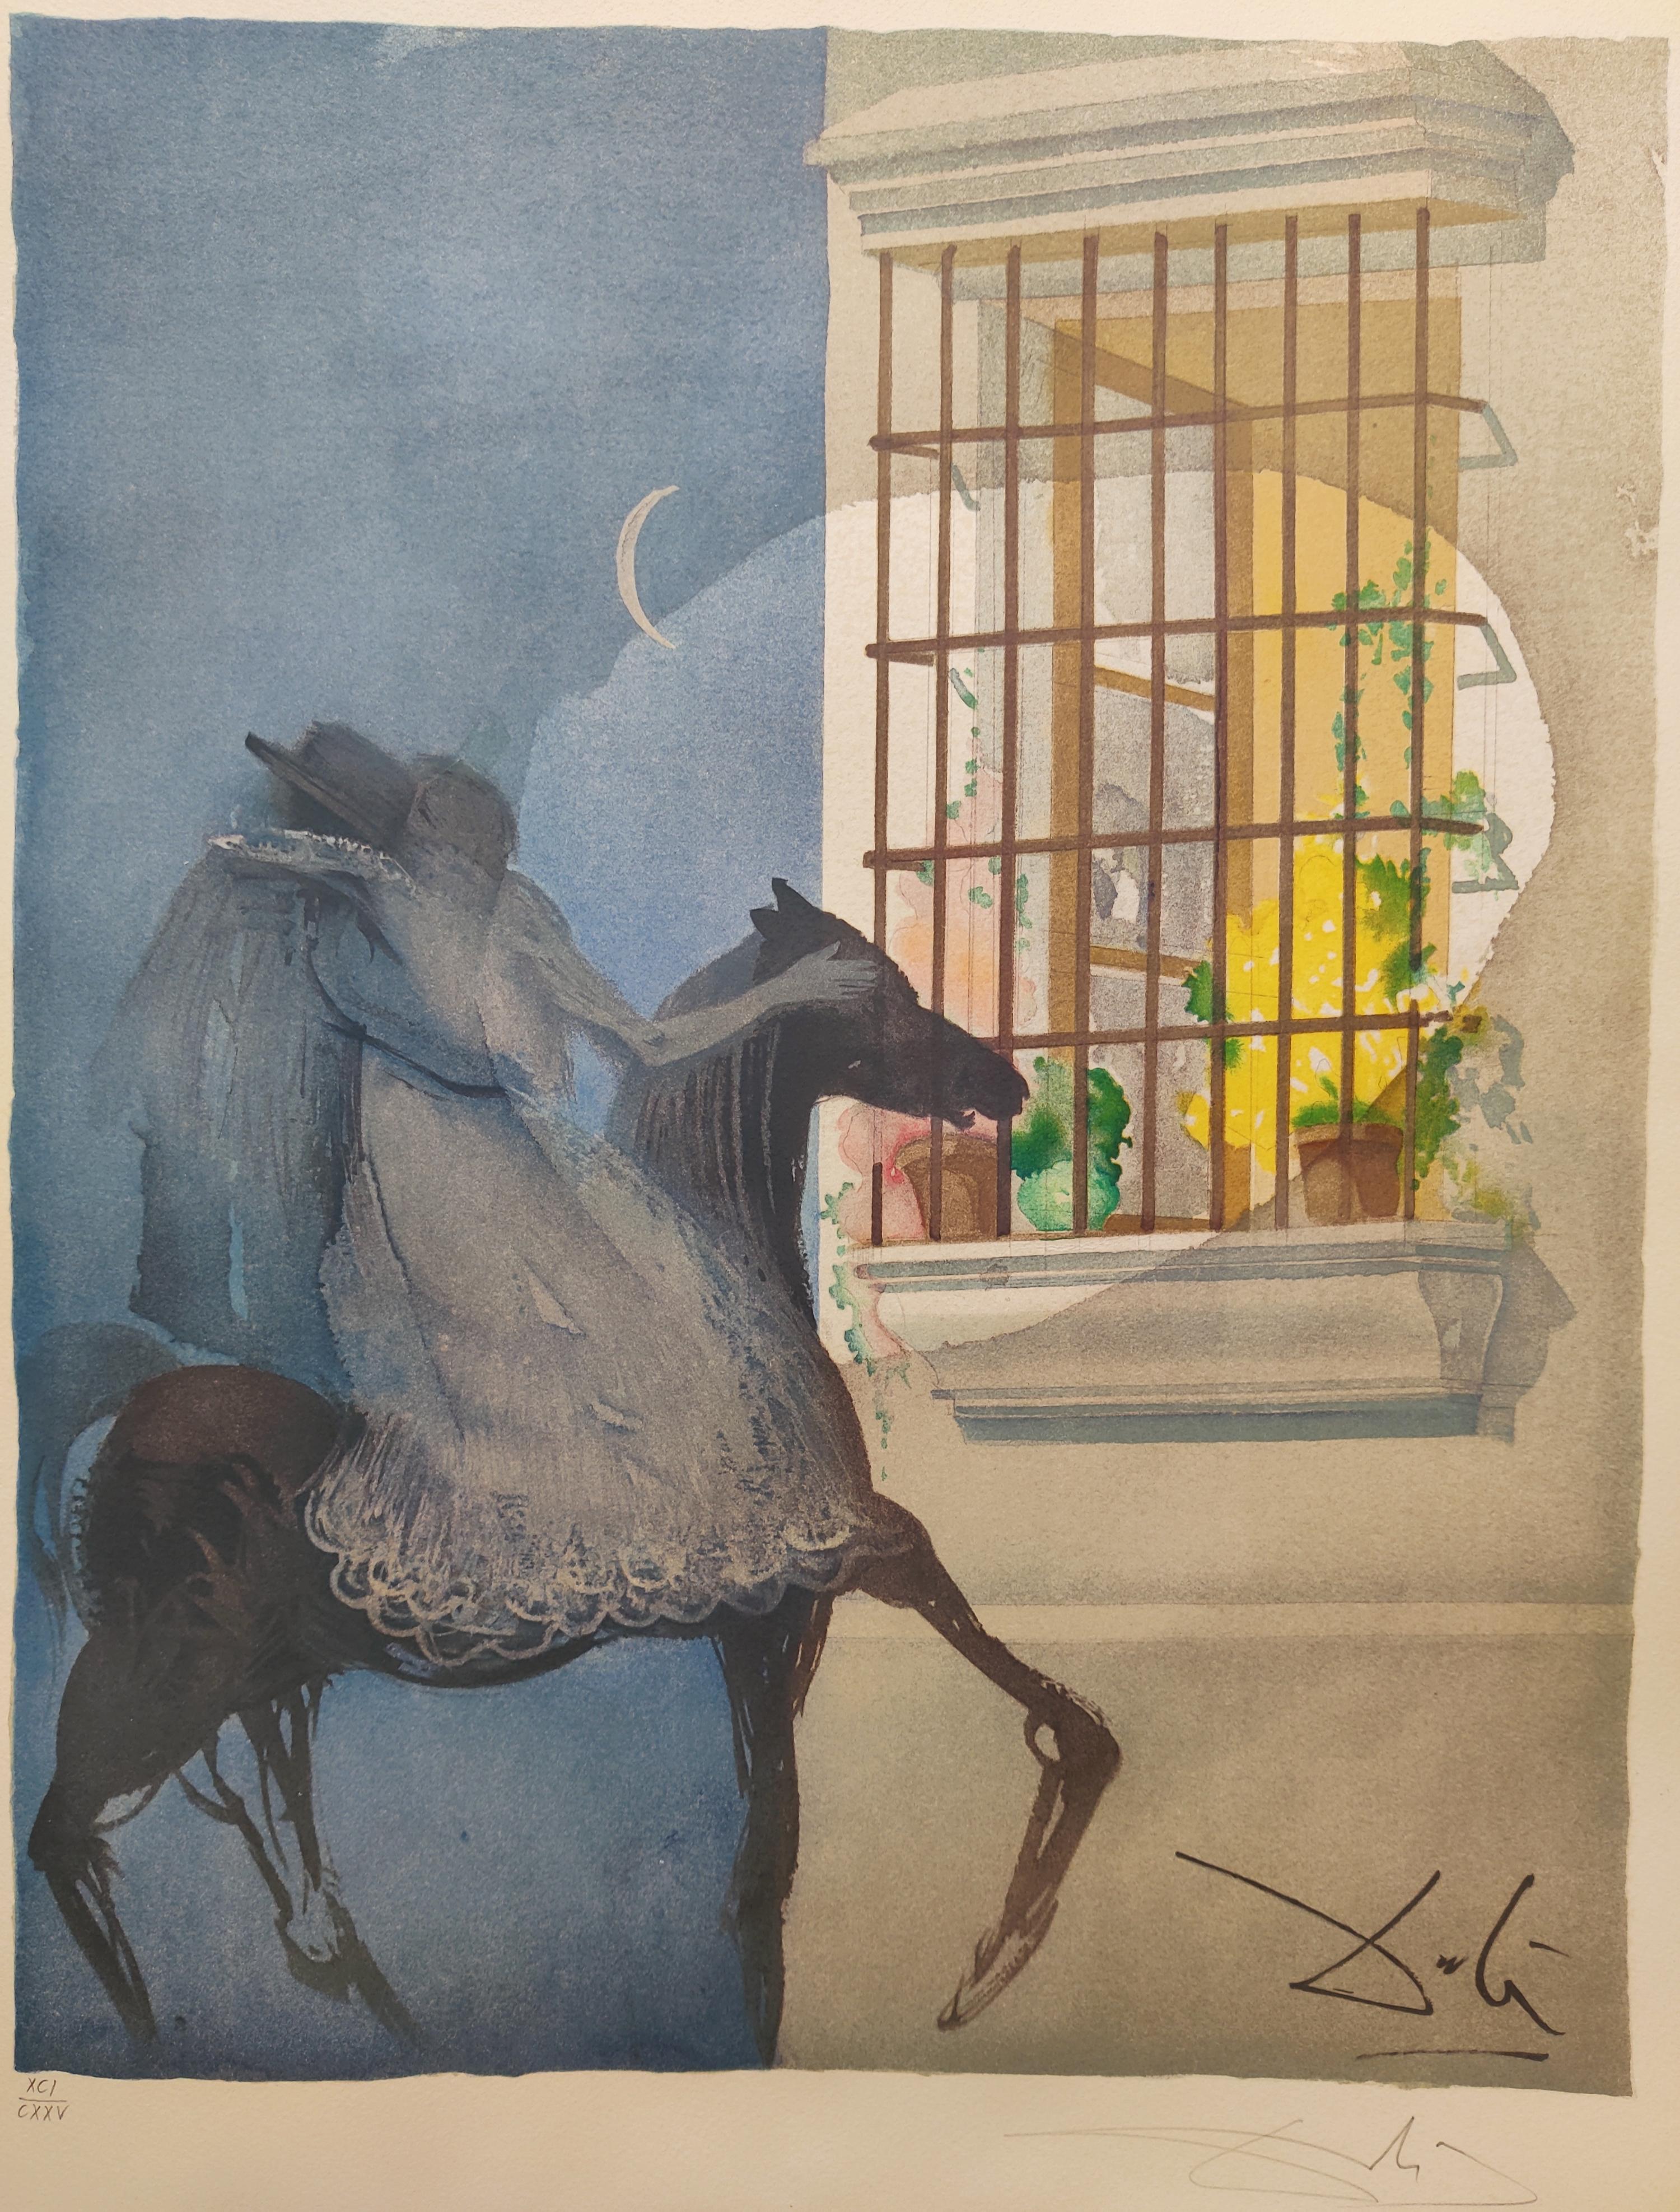 Salvador Dali 
Titre : Carmen et Don José s'enfuyant à cheval de l'opéra Carmen, 1970
Lithographie couleur
Edition XCI / CXXV
Signé à la main en bas à droite
Publié par Shorewood Publishers, New York
Référence : Champ 70-1 K.
